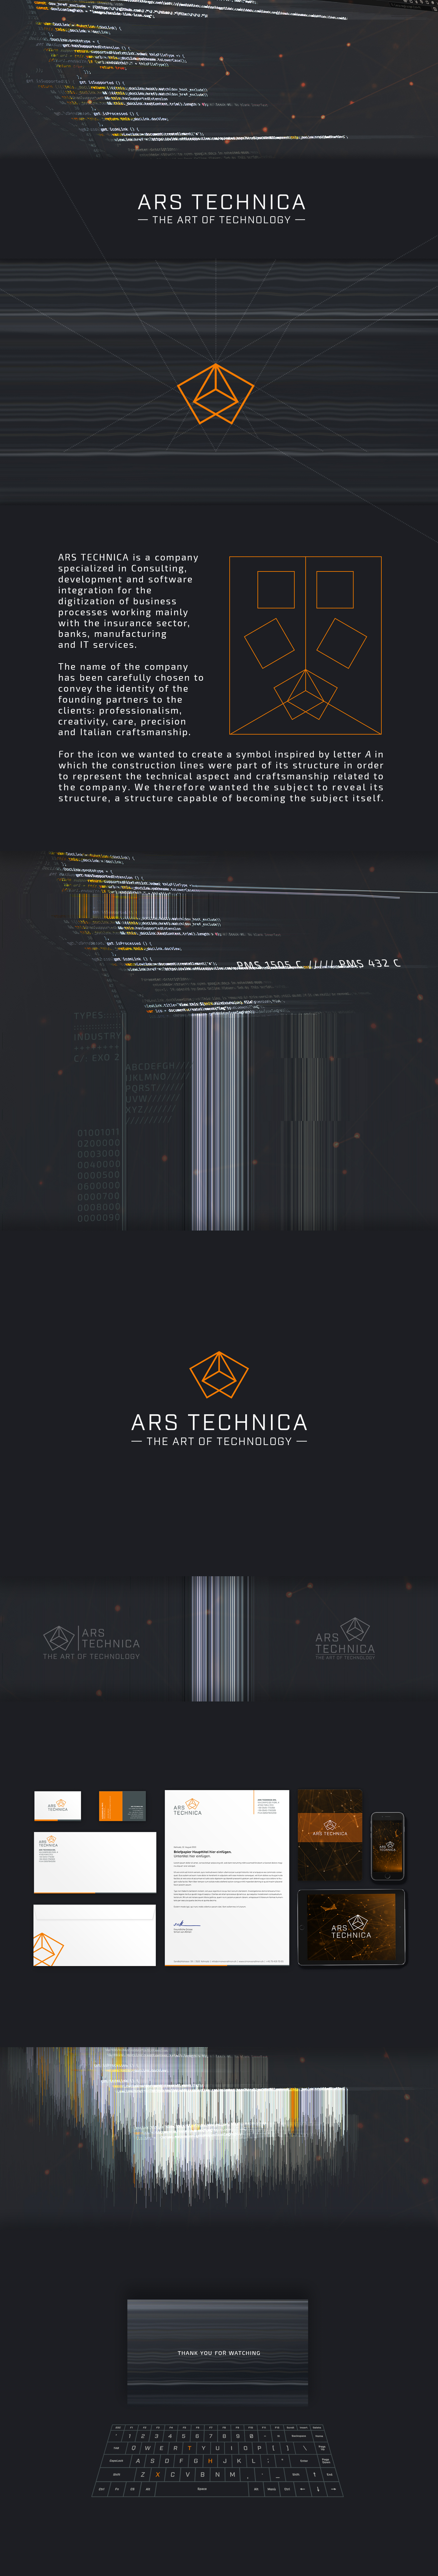 ars ars-technica tech Technology branding  design arsorum